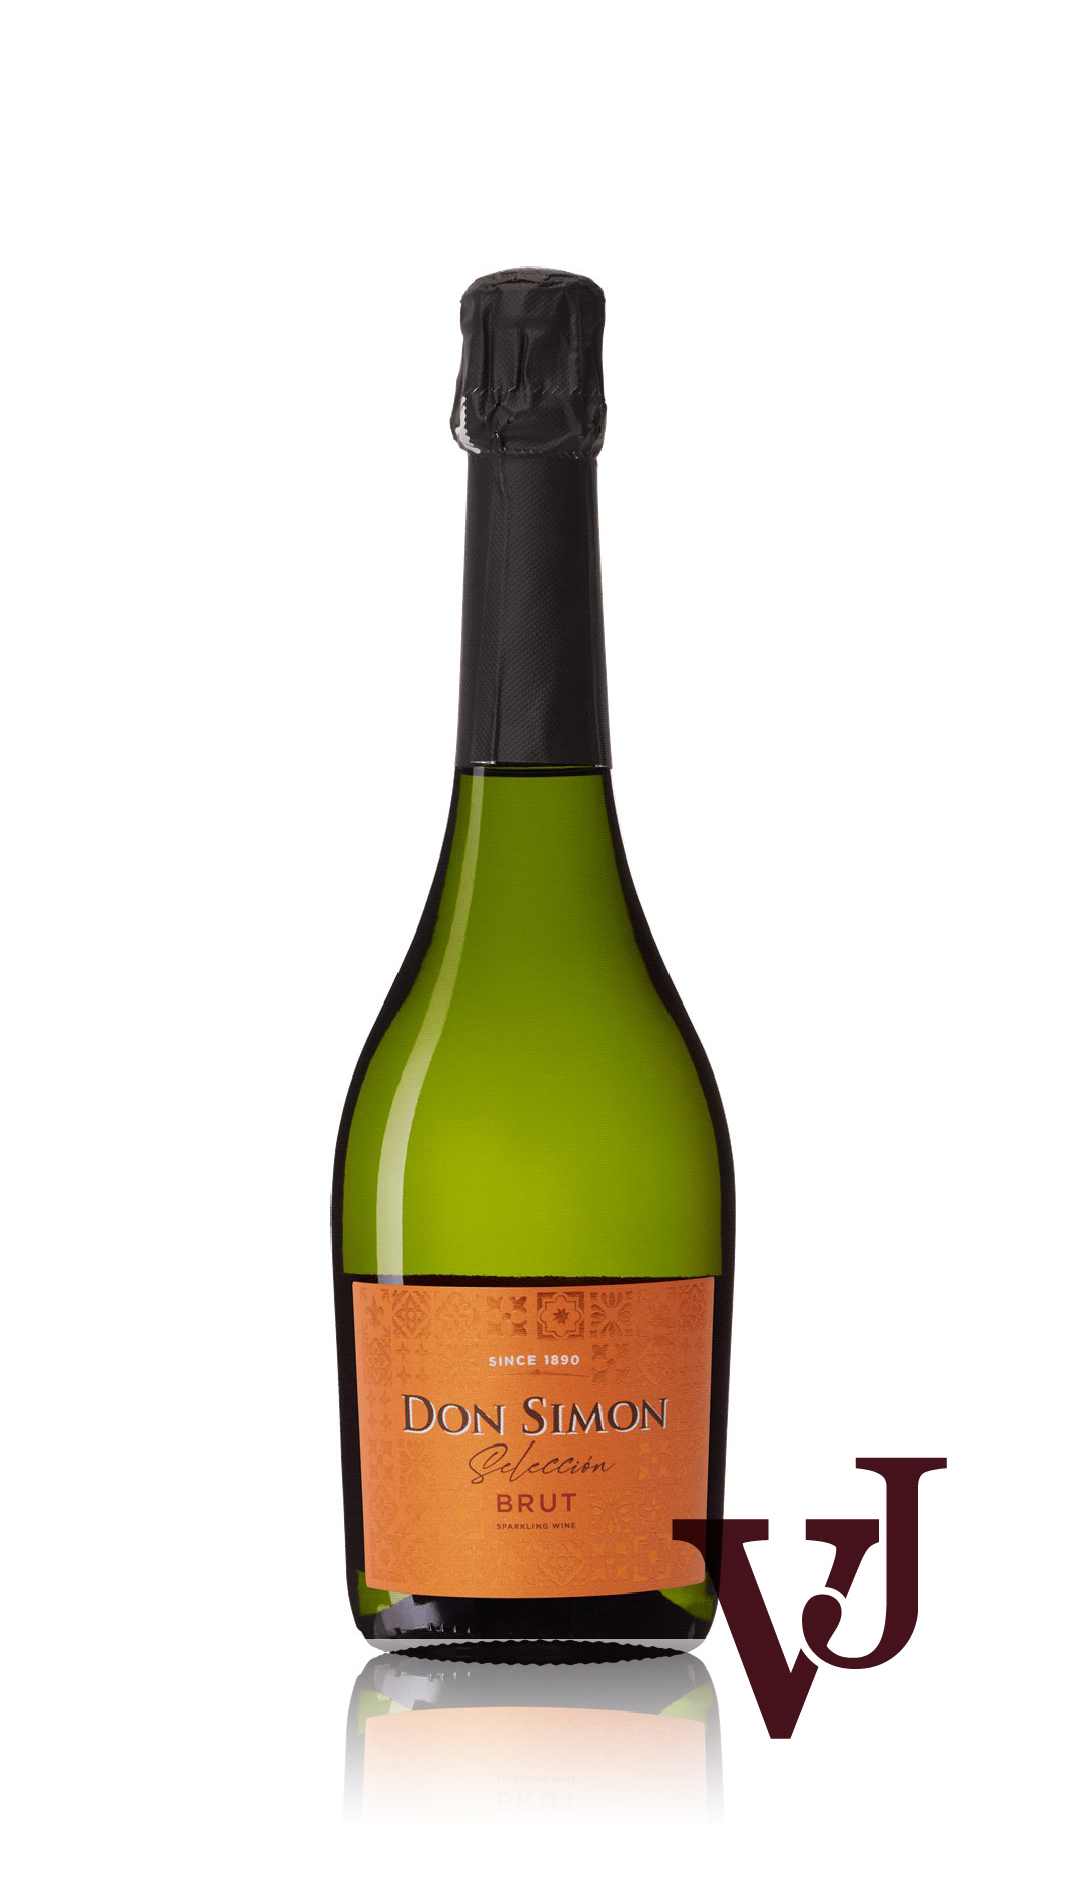 Mousserande vin - Don Simon Seleccion Brut artikel nummer 7357301 från producenten J Garcia Carrión från Spanien.